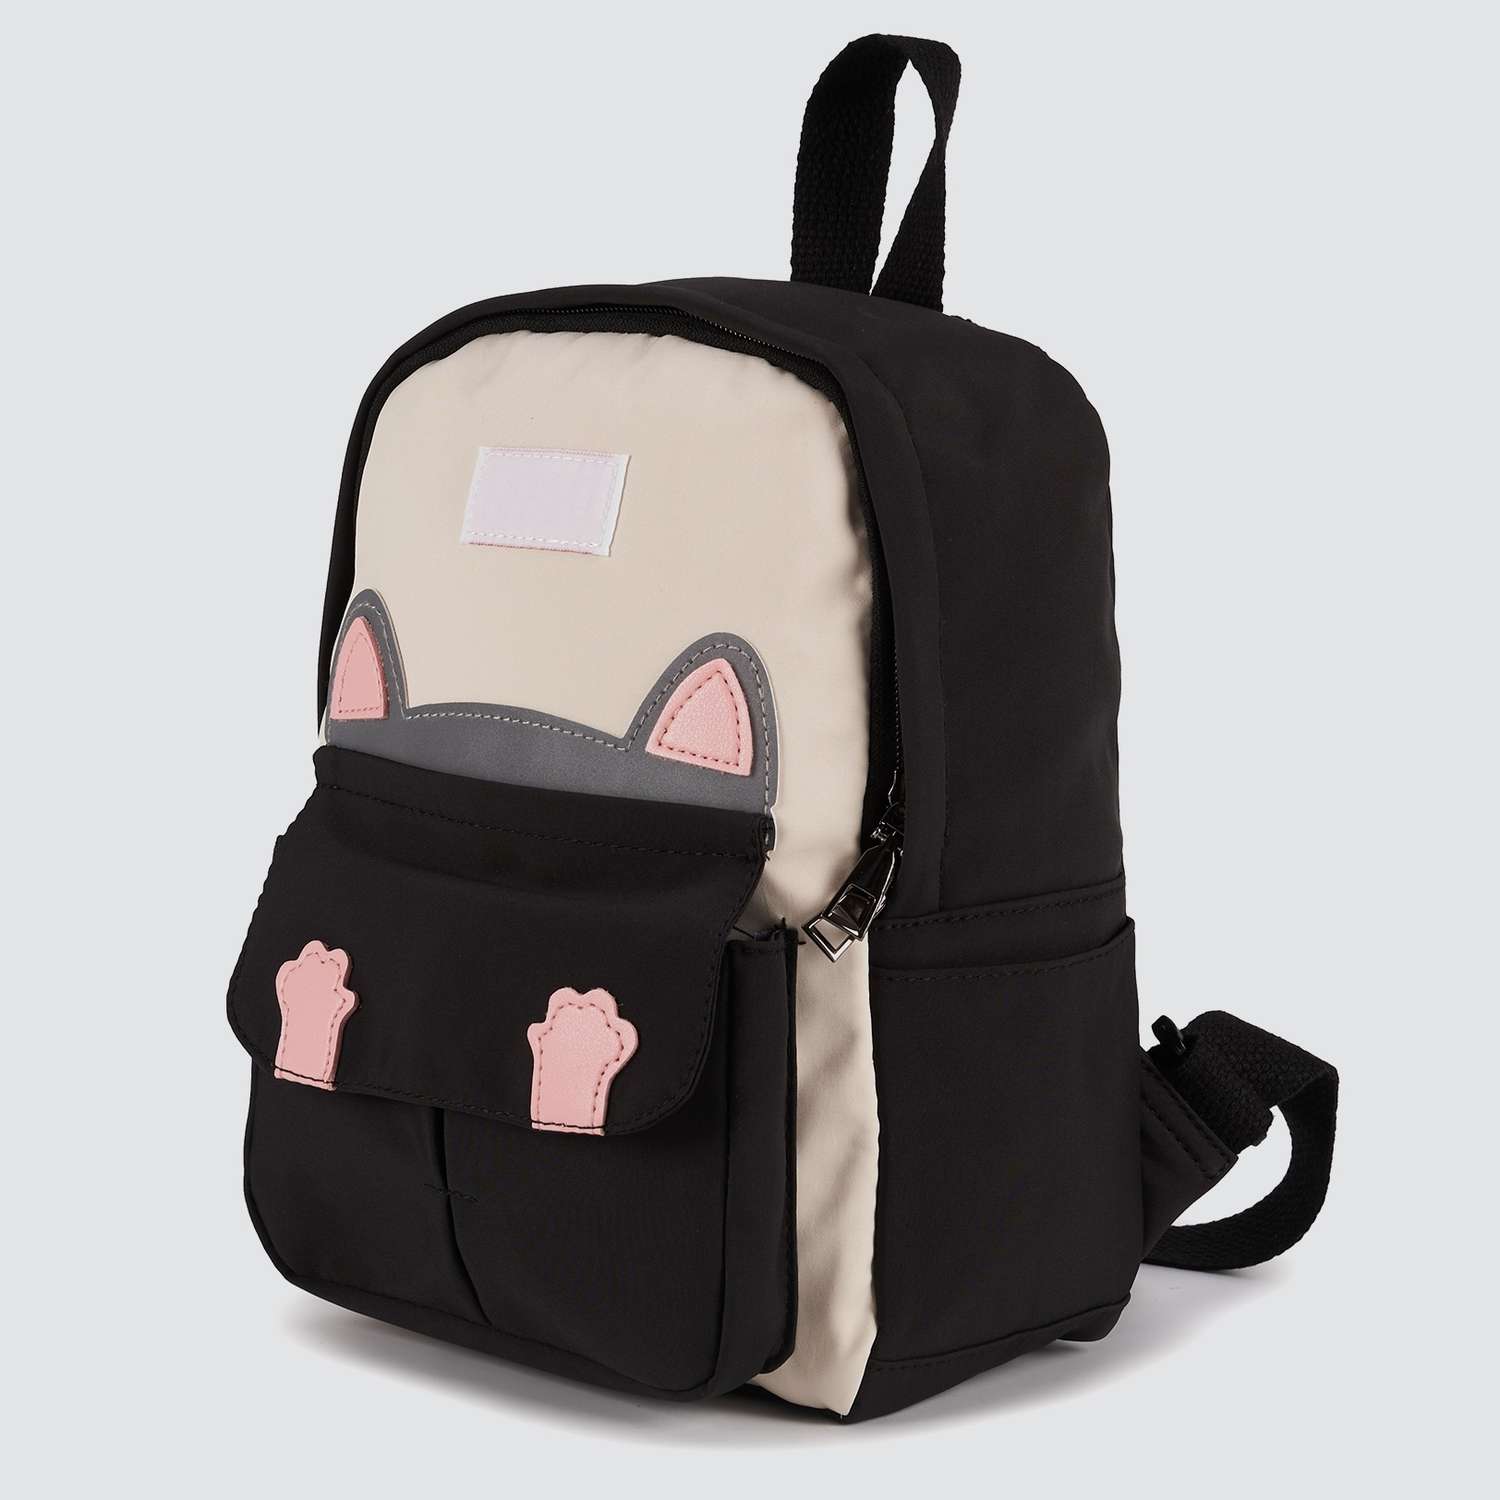 Детский рюкзак Journey 1515 котик черный - фото 1